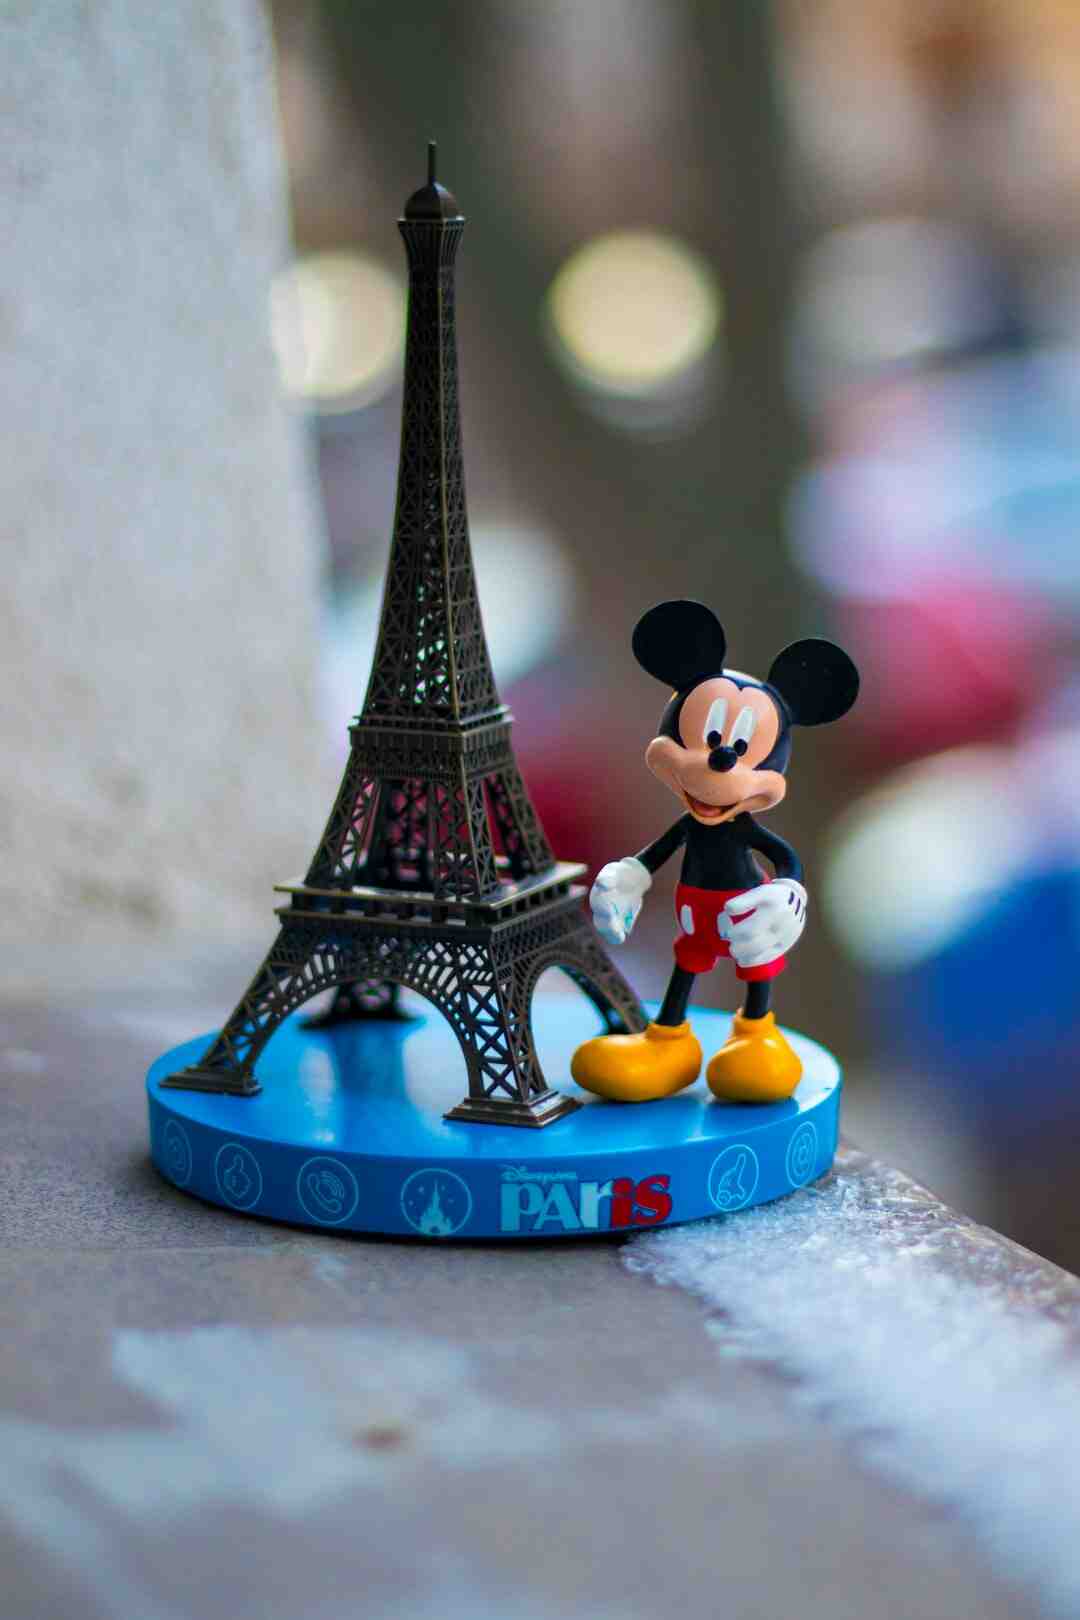 Welche Station soll ich zum Disneyland Paris nehmen?